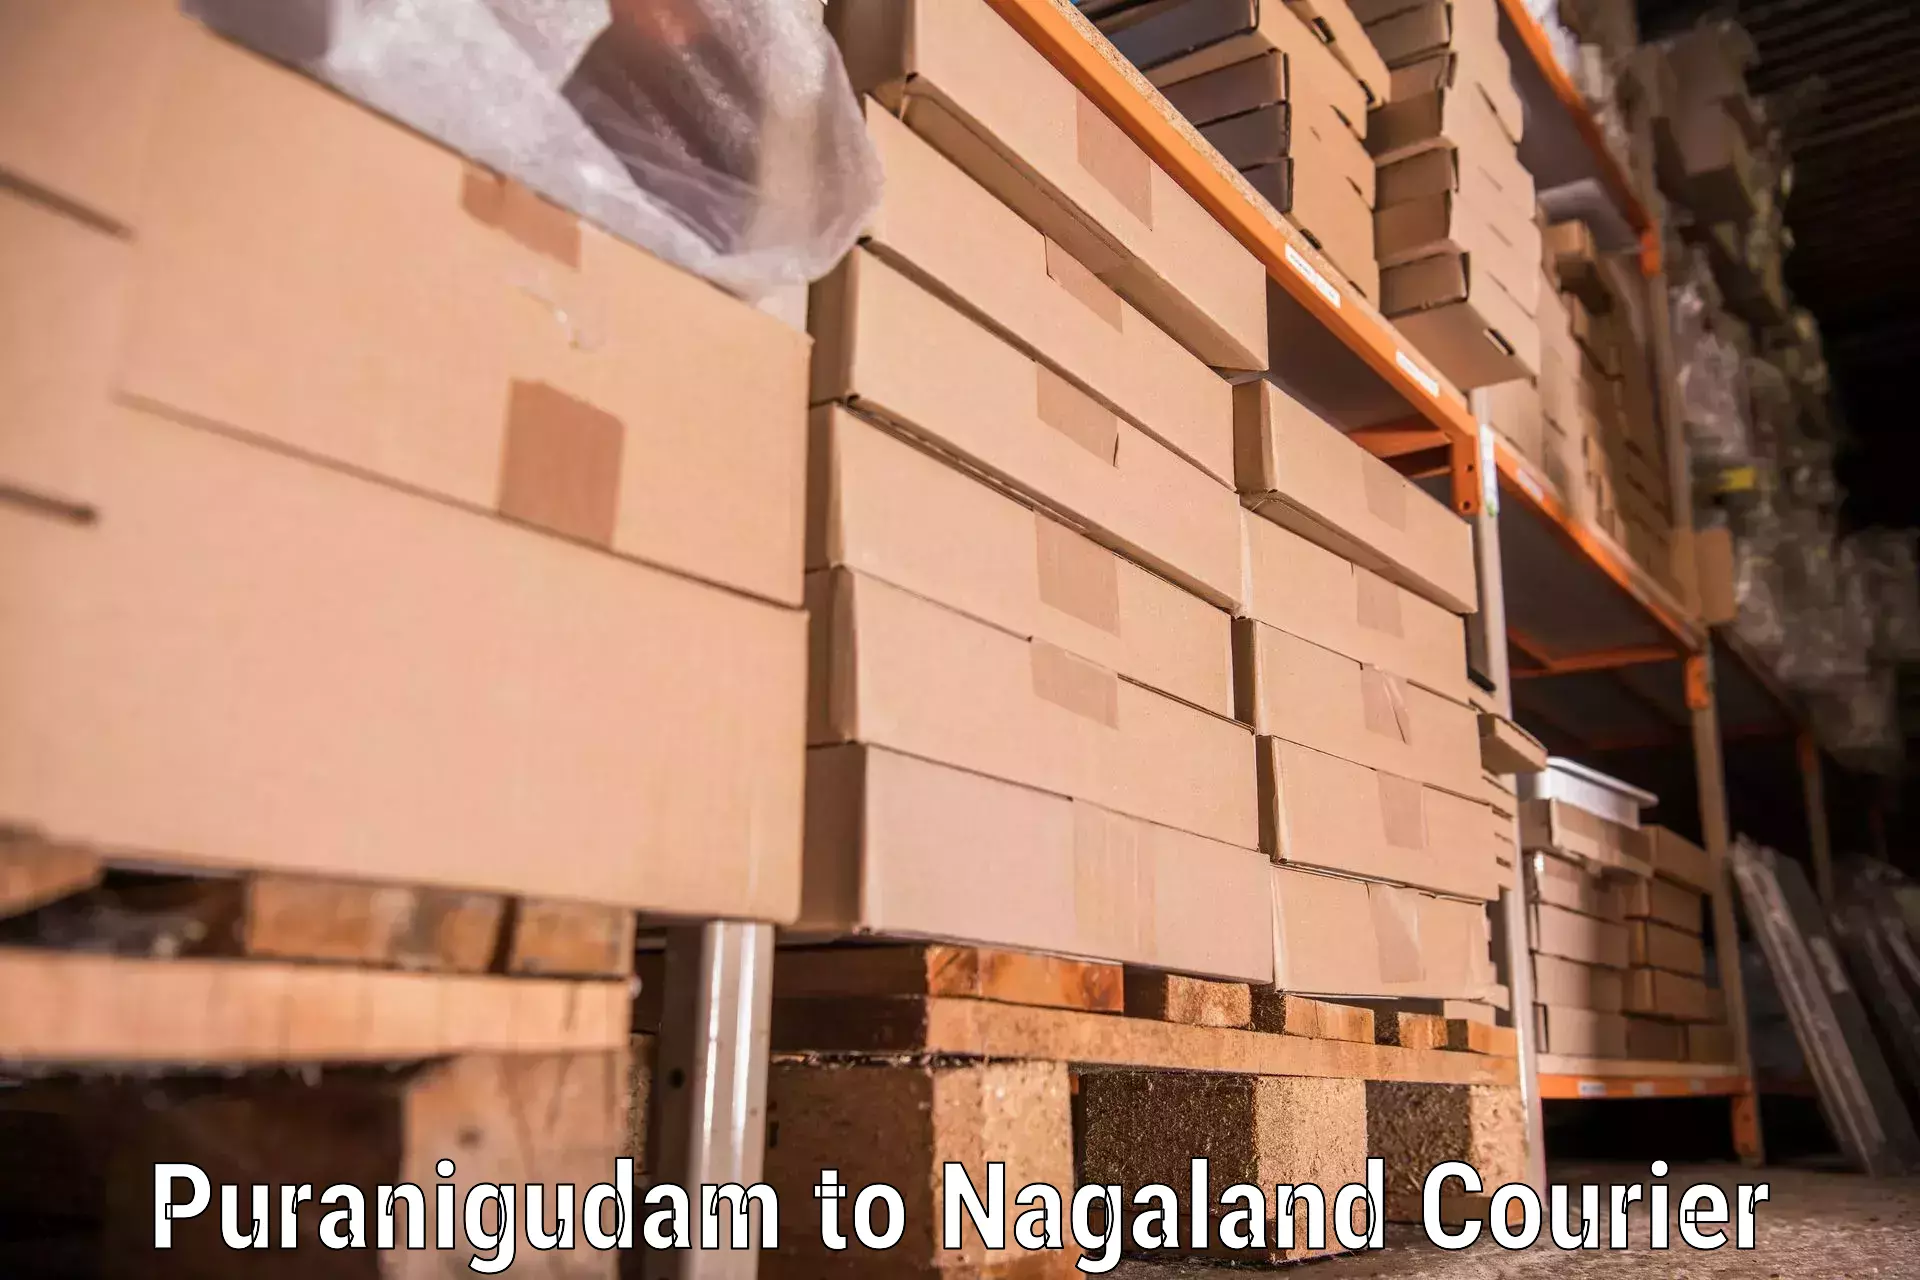 Trusted moving company Puranigudam to Nagaland